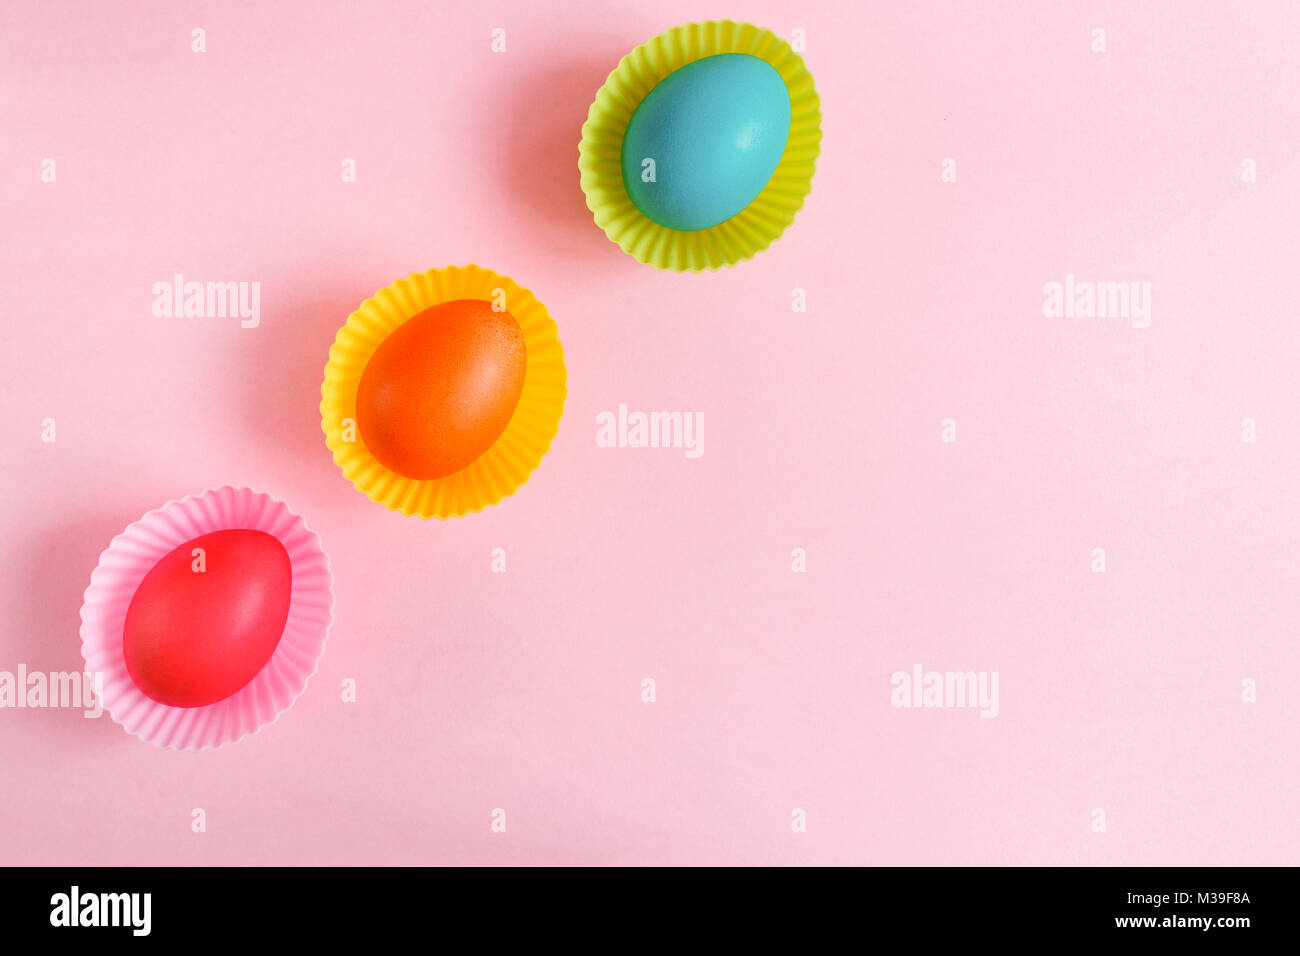 Ostern Hintergrund. Flach drei bunt bemalte Eier in Rosa geschnitzte cupcakes Formen sind diadonally liegen auf einem rosa Hintergrund mit kopieren. Stockfoto